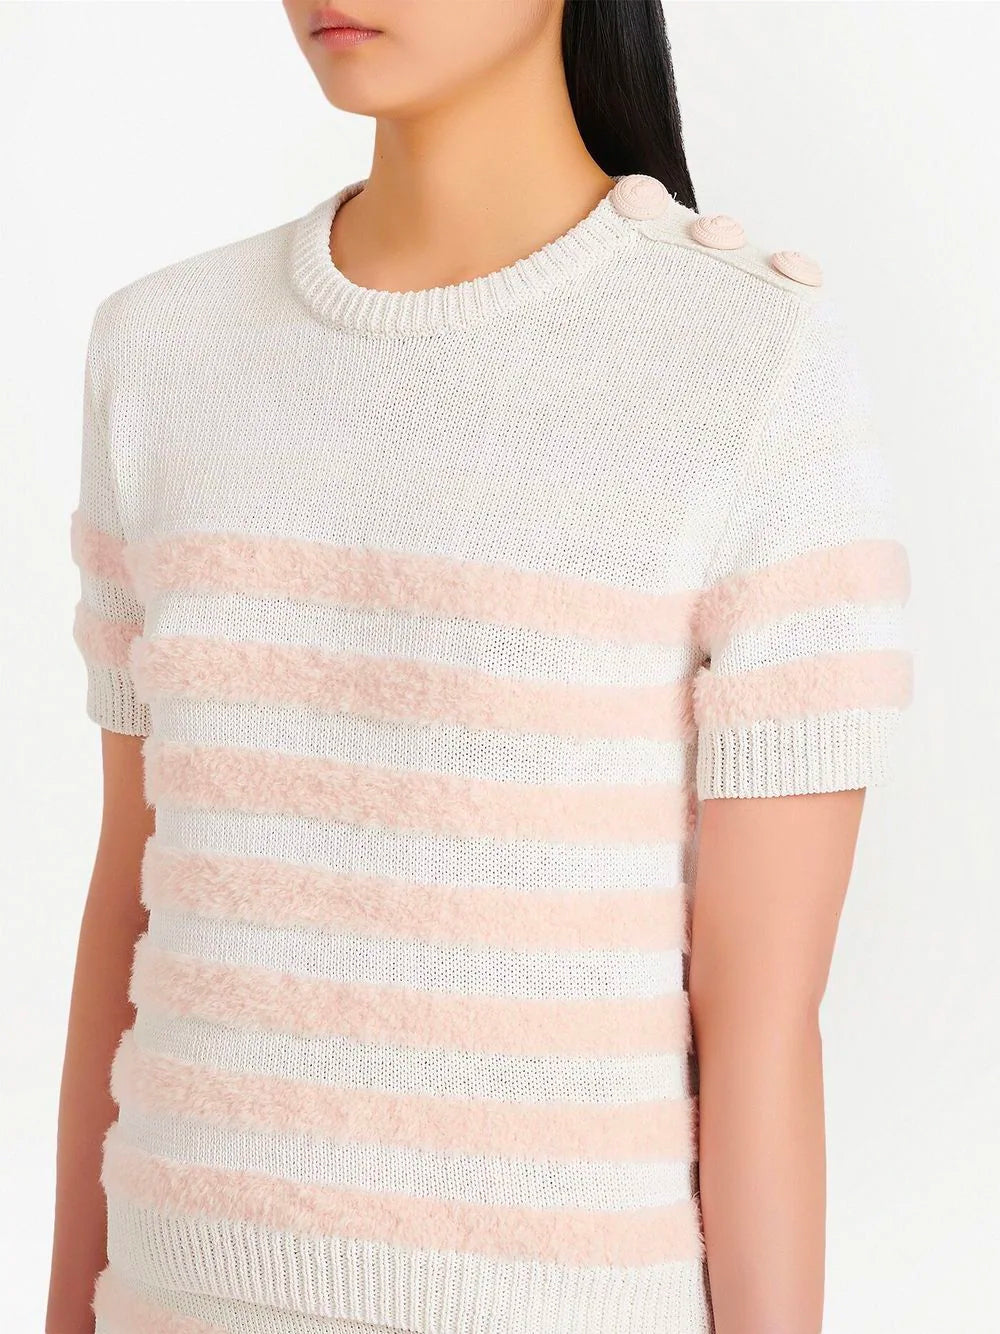 BALMAIN WOMEN Striped Knit Top Pink/White - MAISONDEFASHION.COM